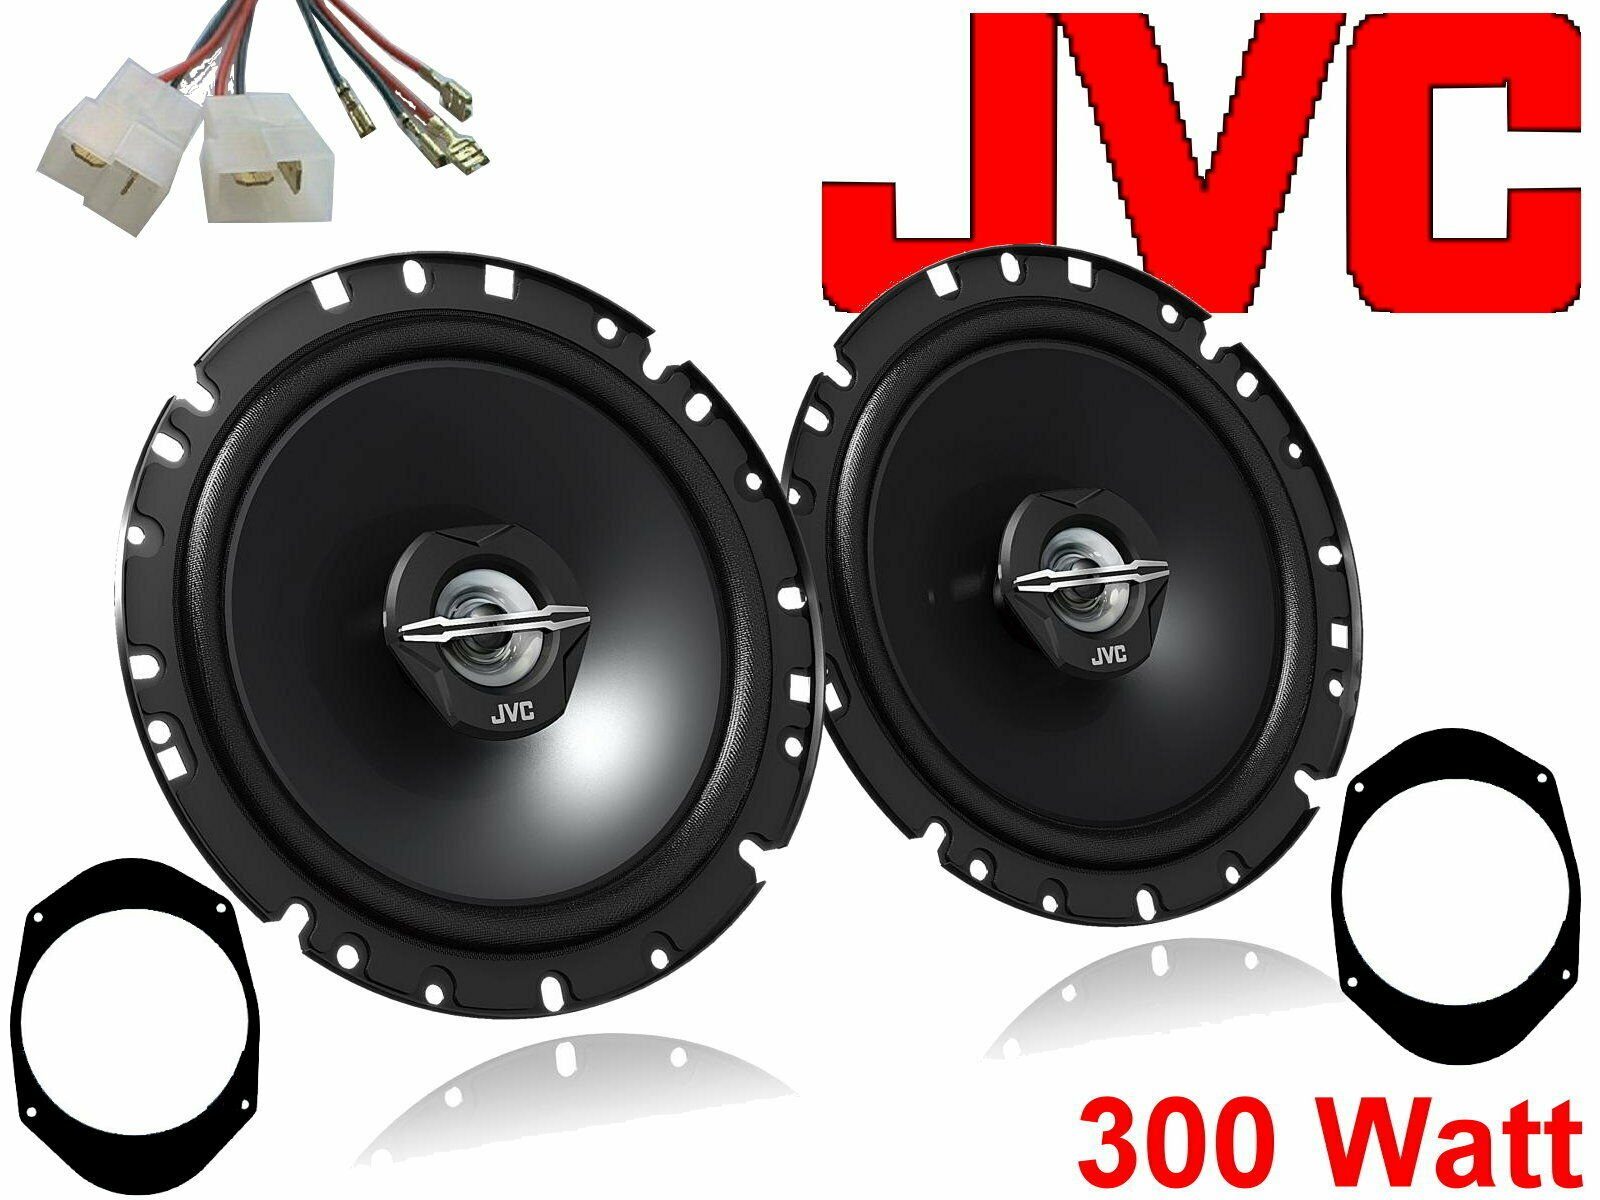 DSX JVC 300 W passend für Ford Fiesta 01 - 08 Lautspre Auto-Lautsprecher (30 W)